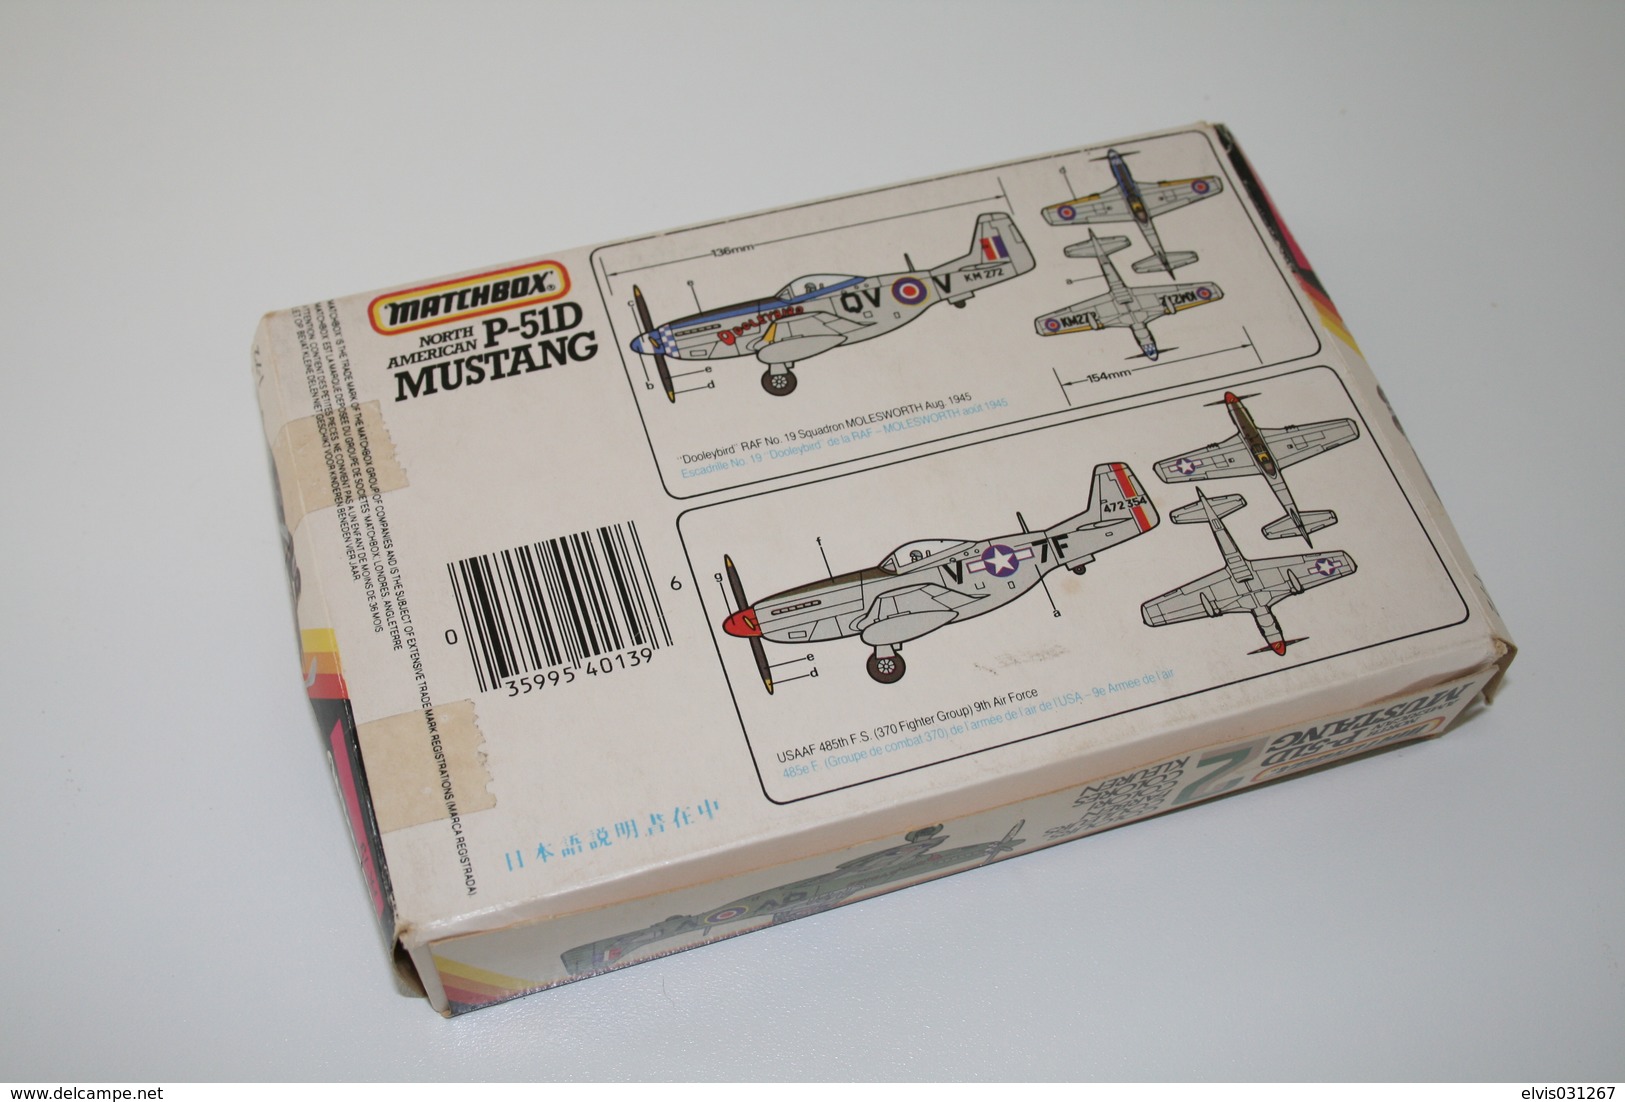 Vintage MODEL KIT : Matchbox P-51D Mustang, Scale 1/72, Vintage, + Original Box - Flugzeuge & Hubschrauber